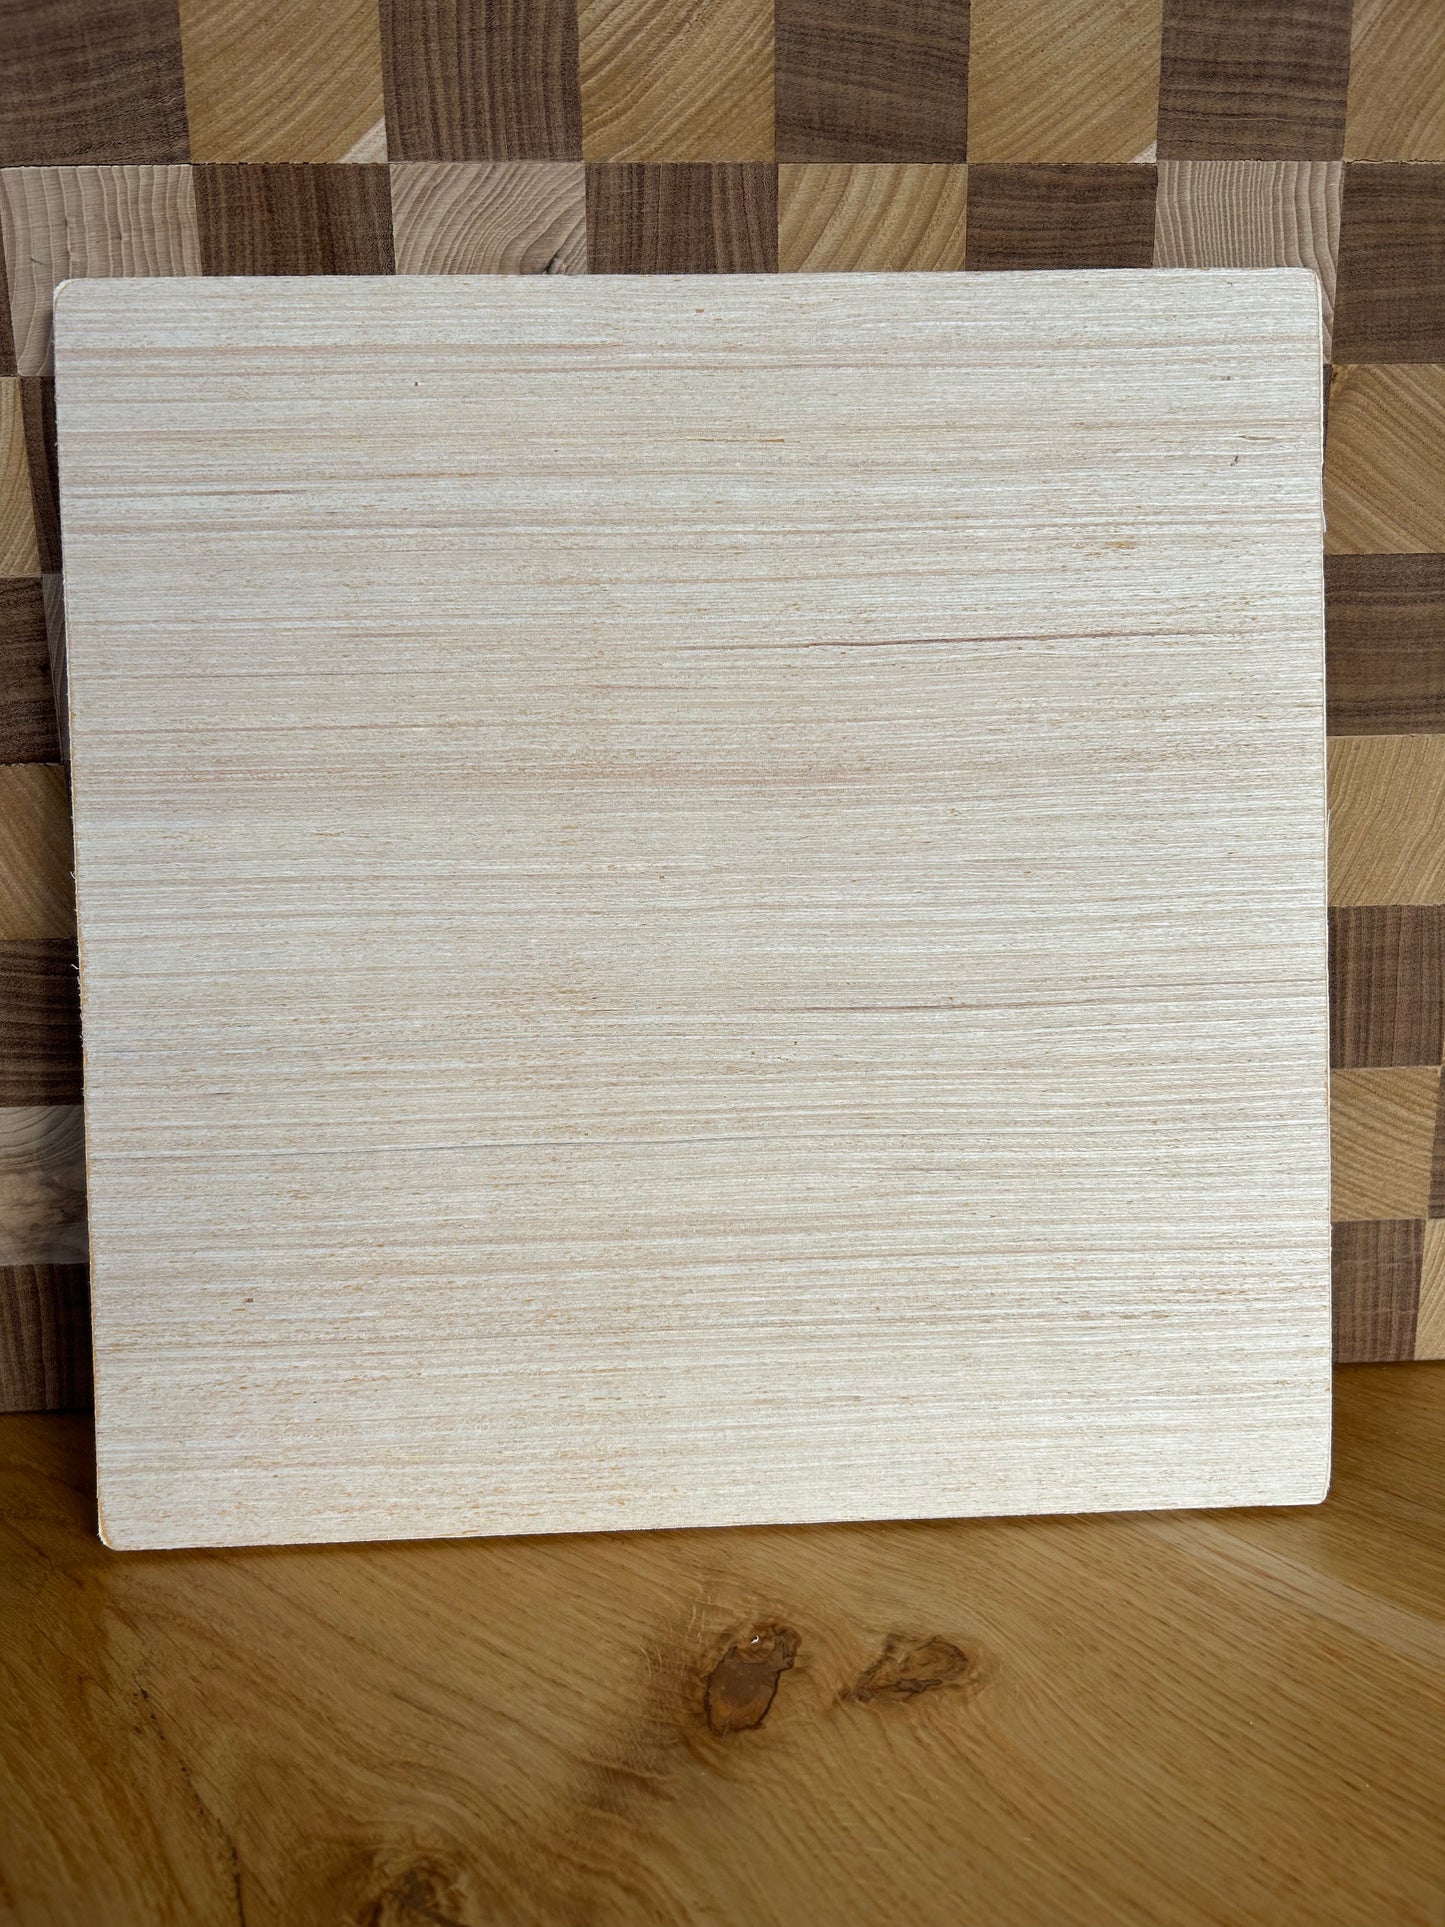 Quadrawood - Forme in legno per creare - Spessore 10 mm